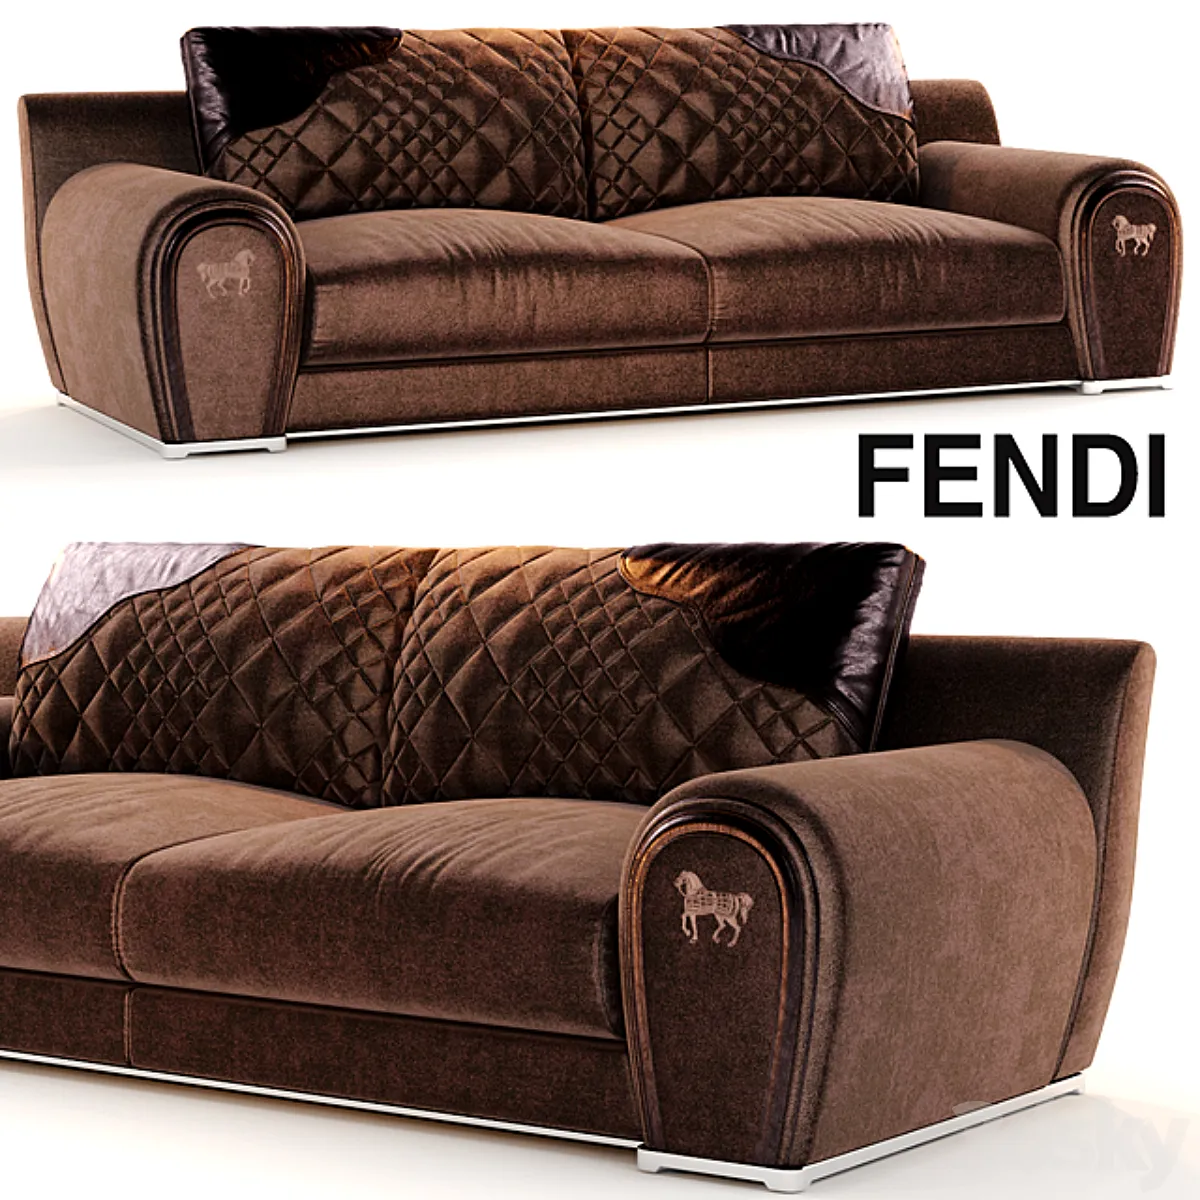 3dsky - Sofa VARENNE fendi - Sofa - 3D model